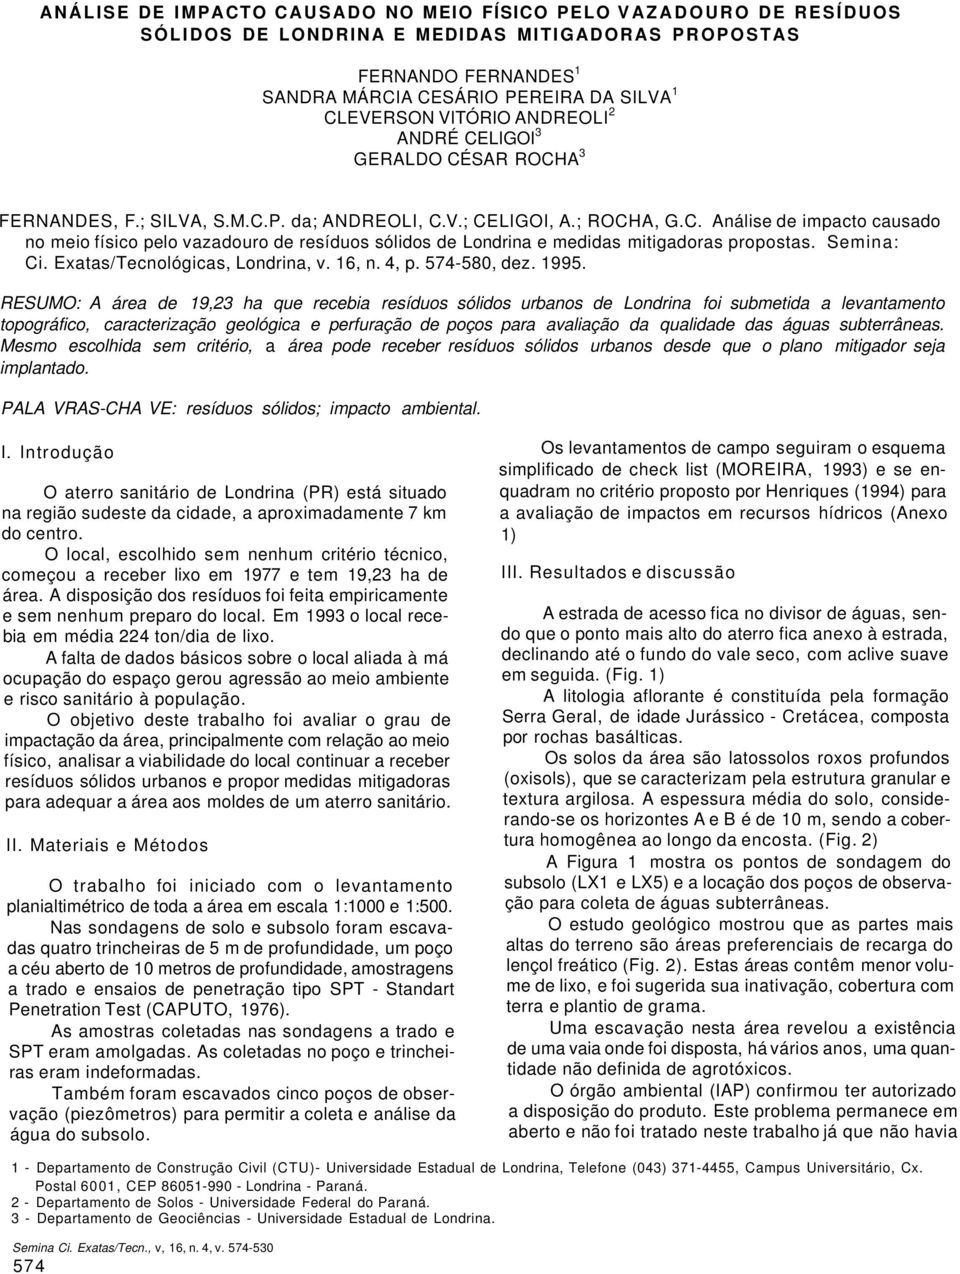 Semina: Ci. Exatas/Tecnológicas, Londrina, v. 16, n. 4, p. 574-580, dez. 1995.